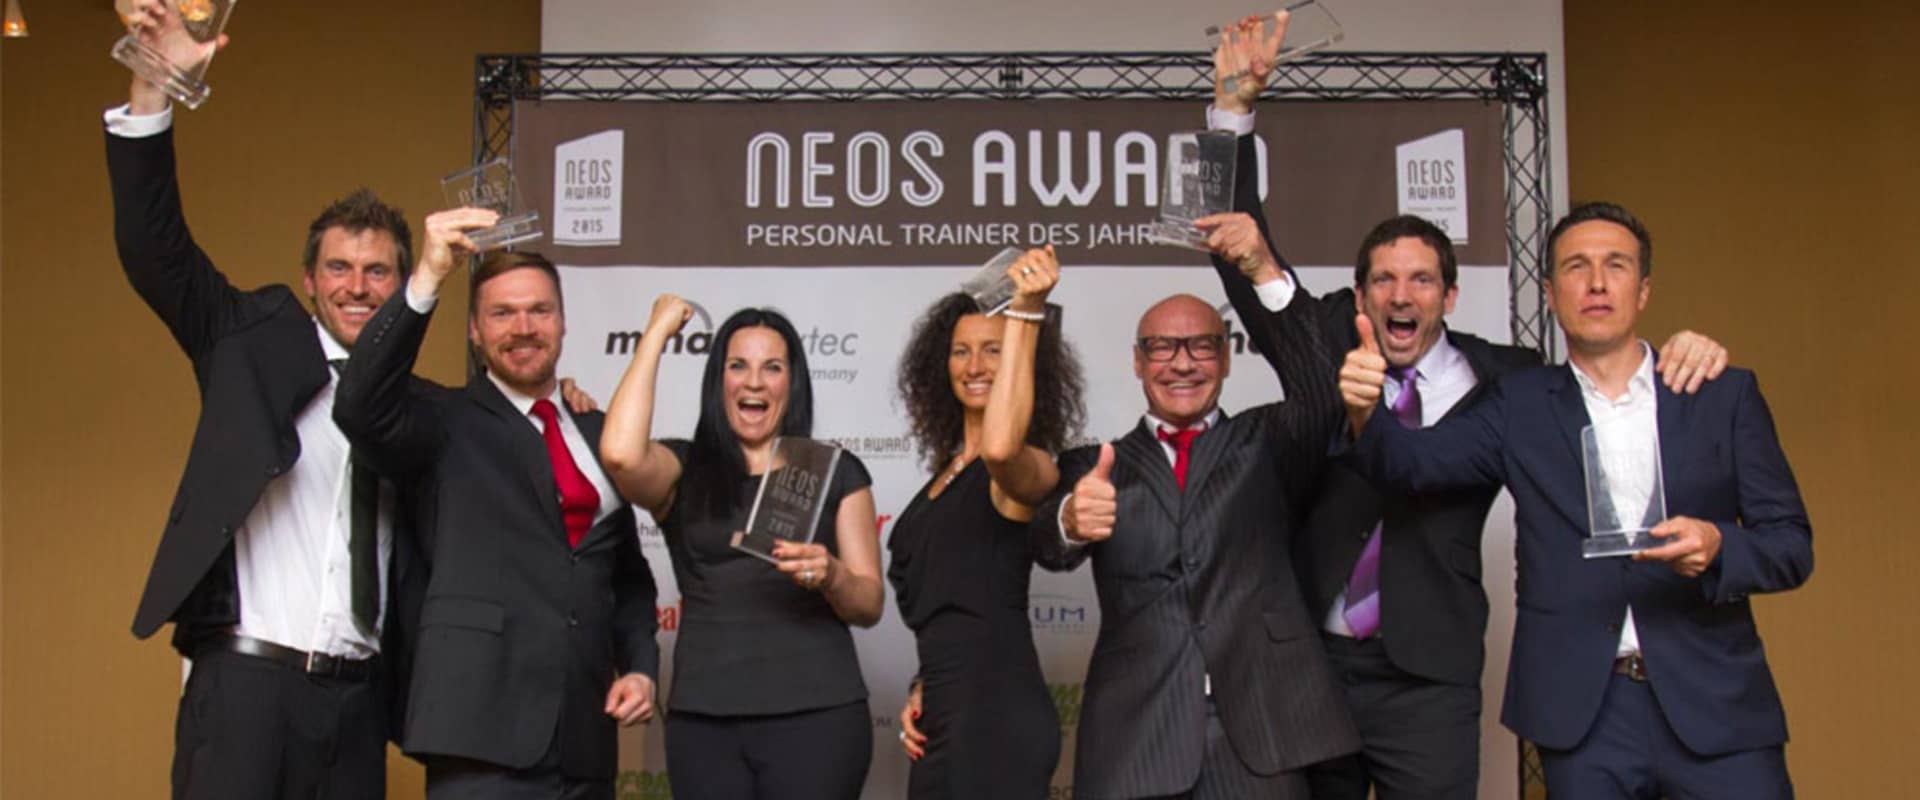 Neos award